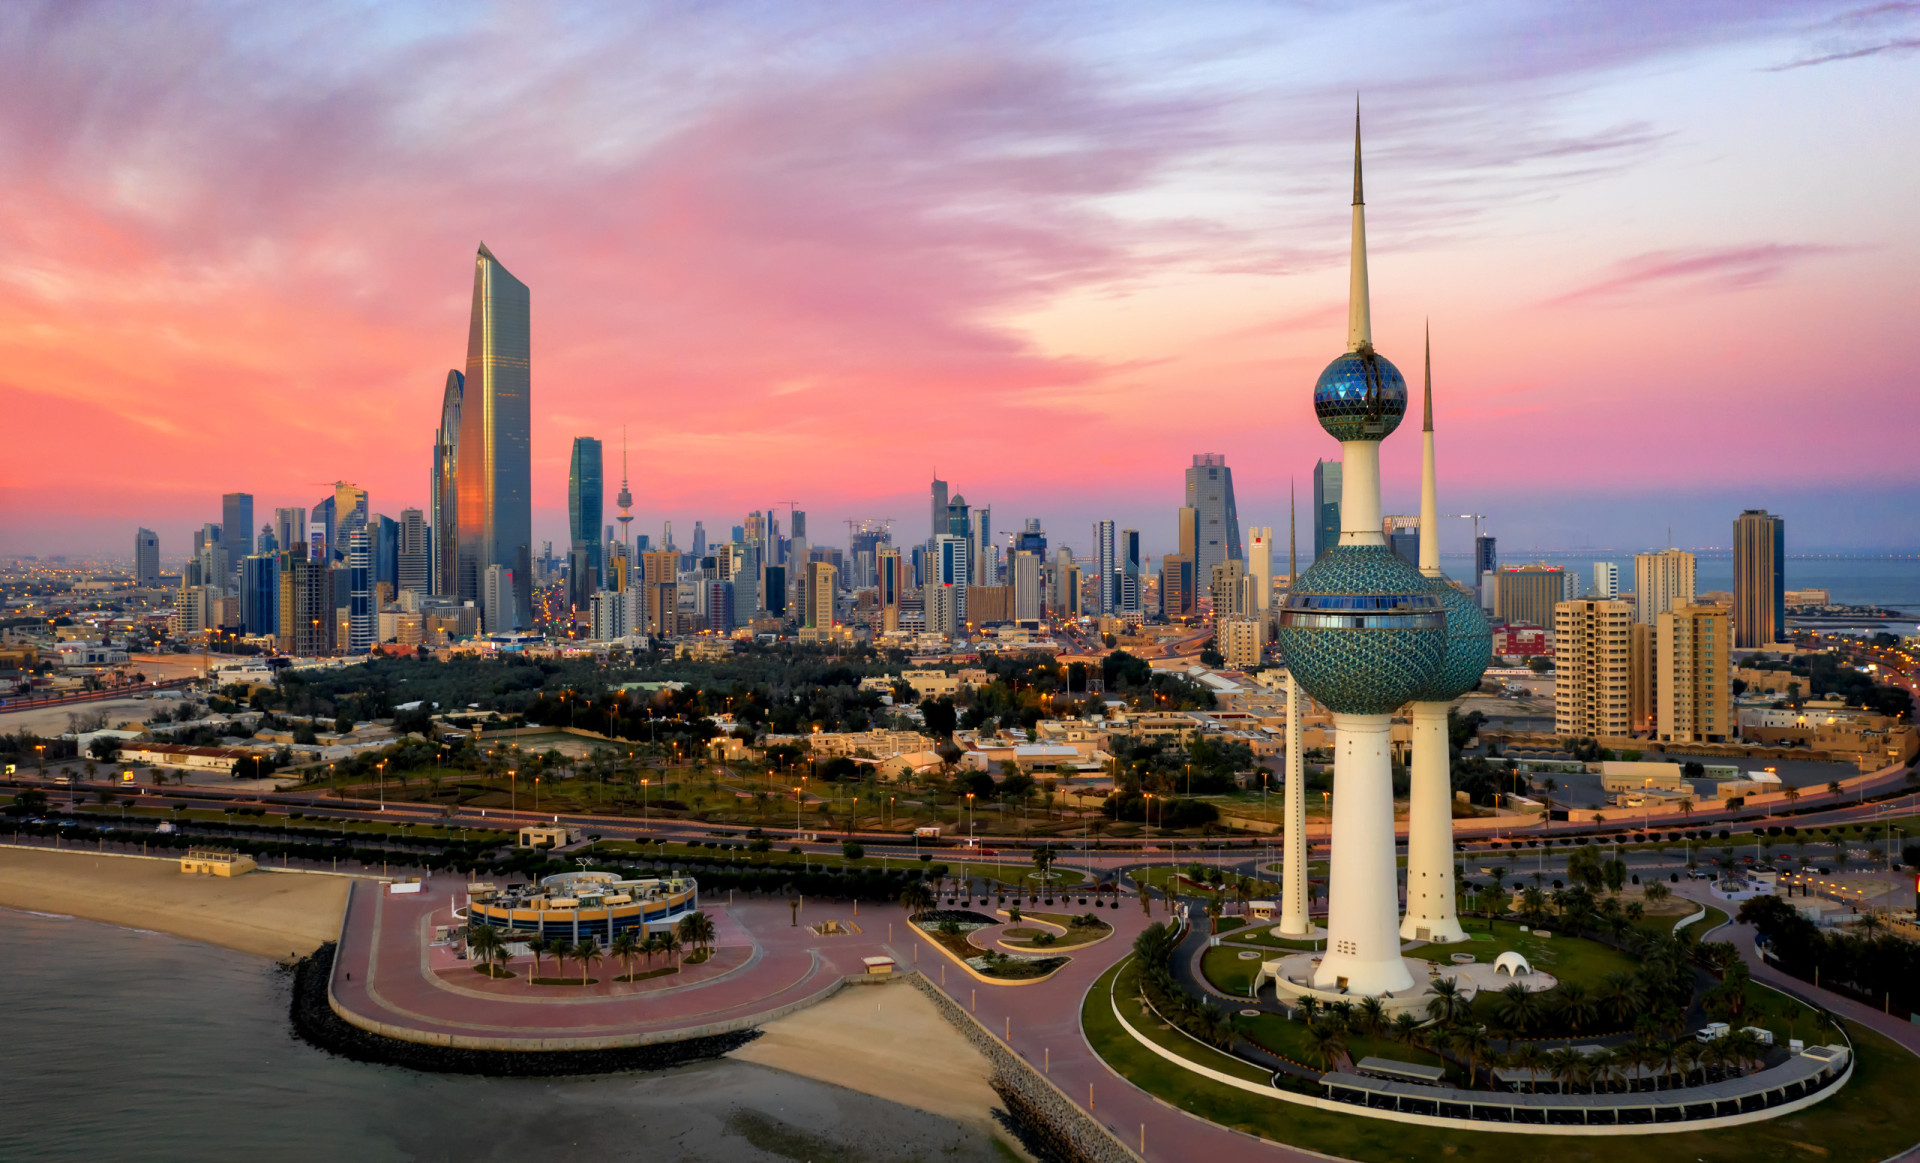 <p>Note : 6.951</p> <p>En plus d'être l'un des pays les plus riches au monde, le Koweït occupe la 13ᵉ position des pays les plus heureux du monde.</p><p><a href="https://www.msn.com/fr-fr/community/channel/vid-7xx8mnucu55yw63we9va2gwr7uihbxwc68fxqp25x6tg4ftibpra?cvid=94631541bc0f4f89bfd59158d696ad7e">Suivez-nous et accédez tous les jours à du contenu exclusif</a></p>